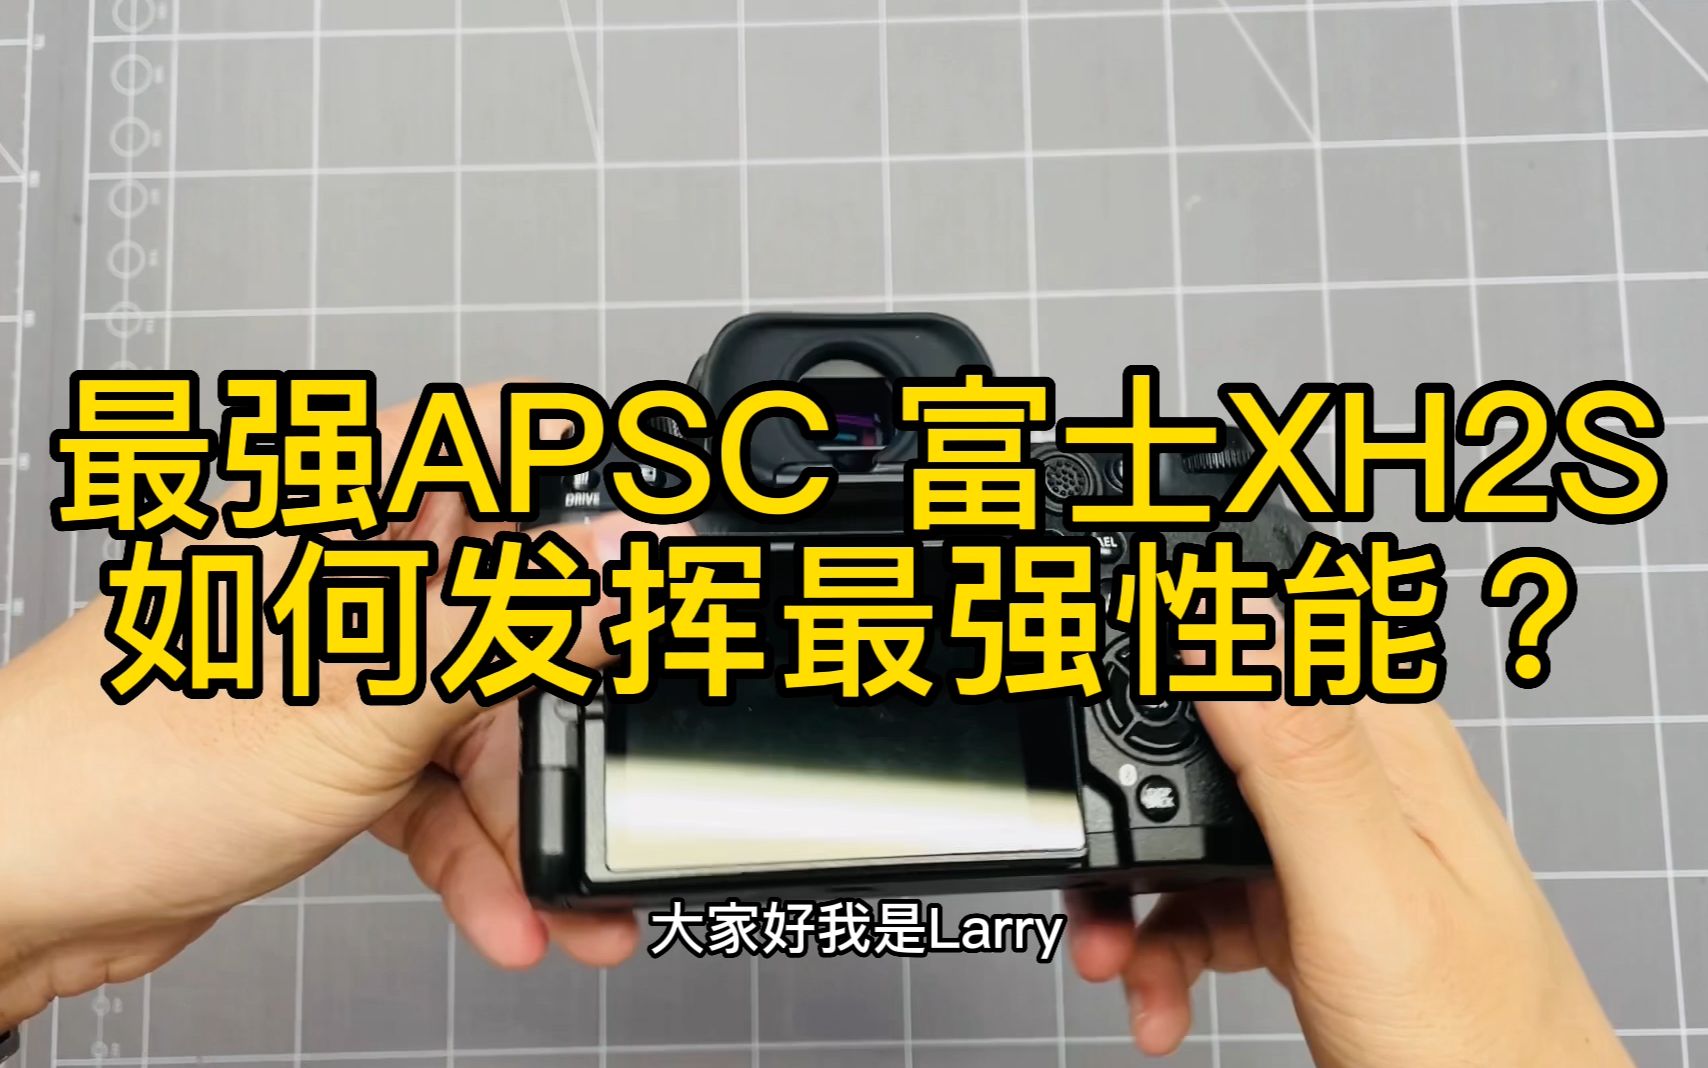 最强APSC 富士XH2S 如何设置发挥最强图片机能